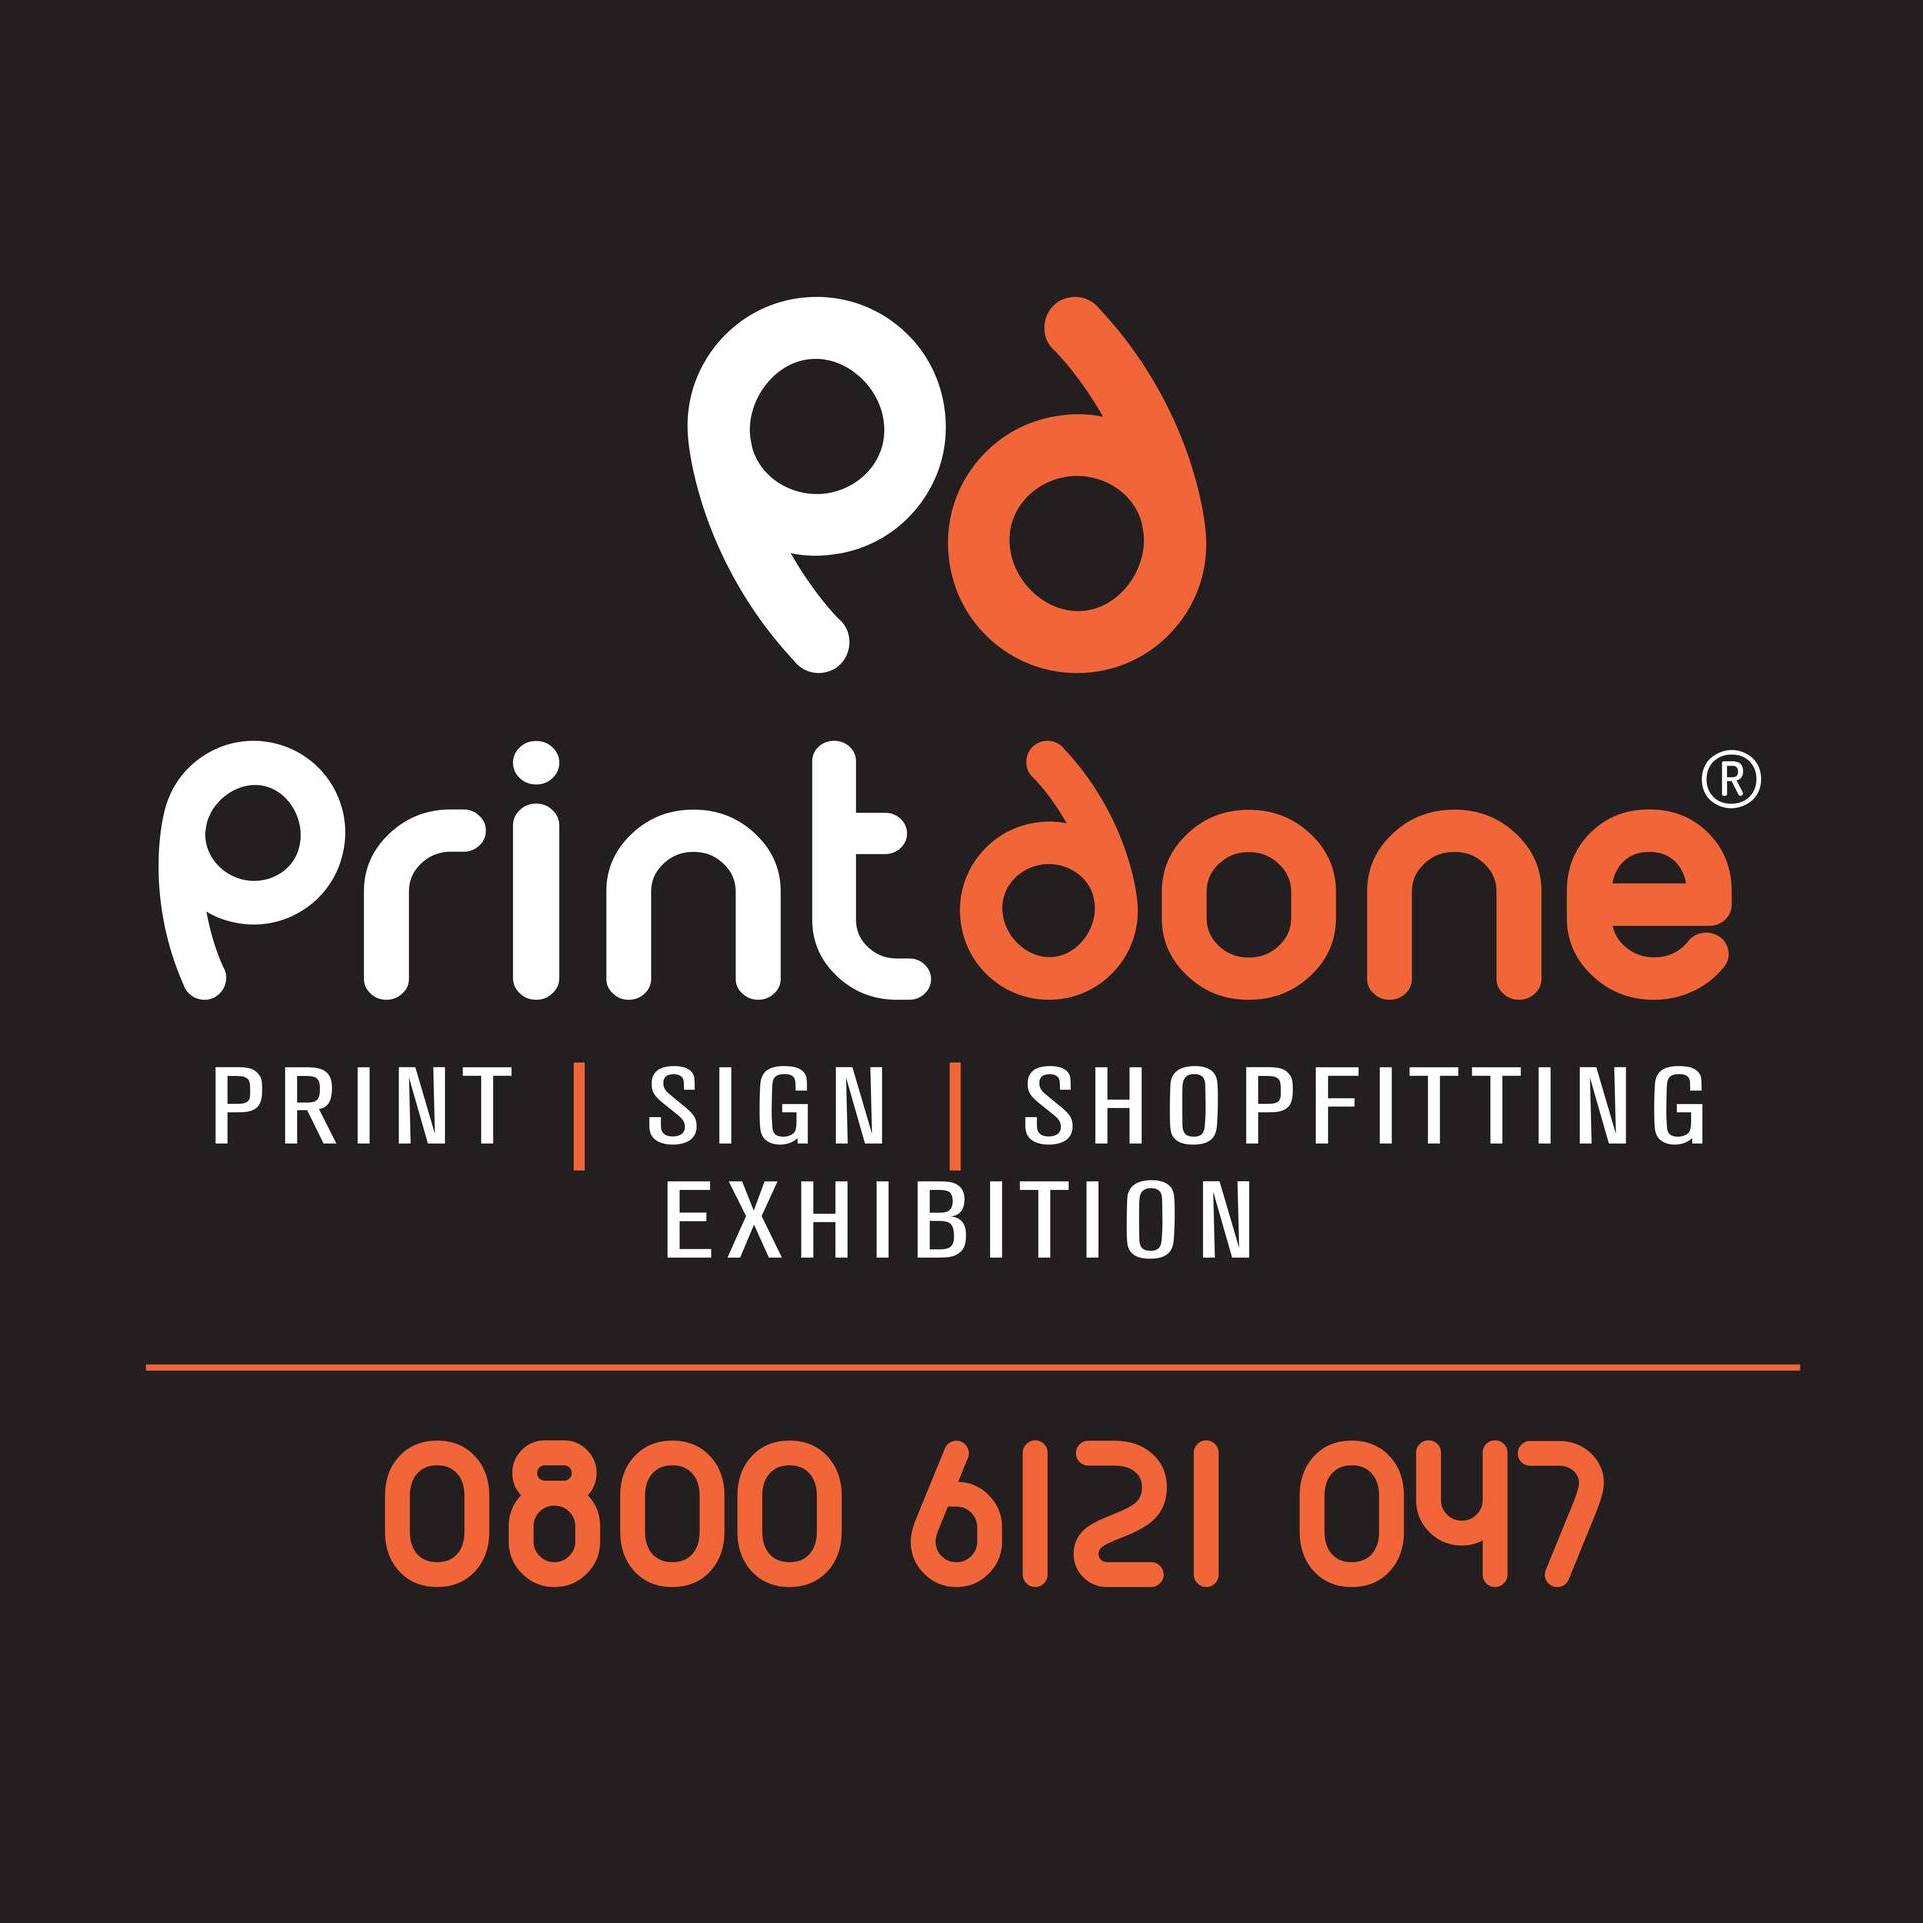 Printdone Ltd